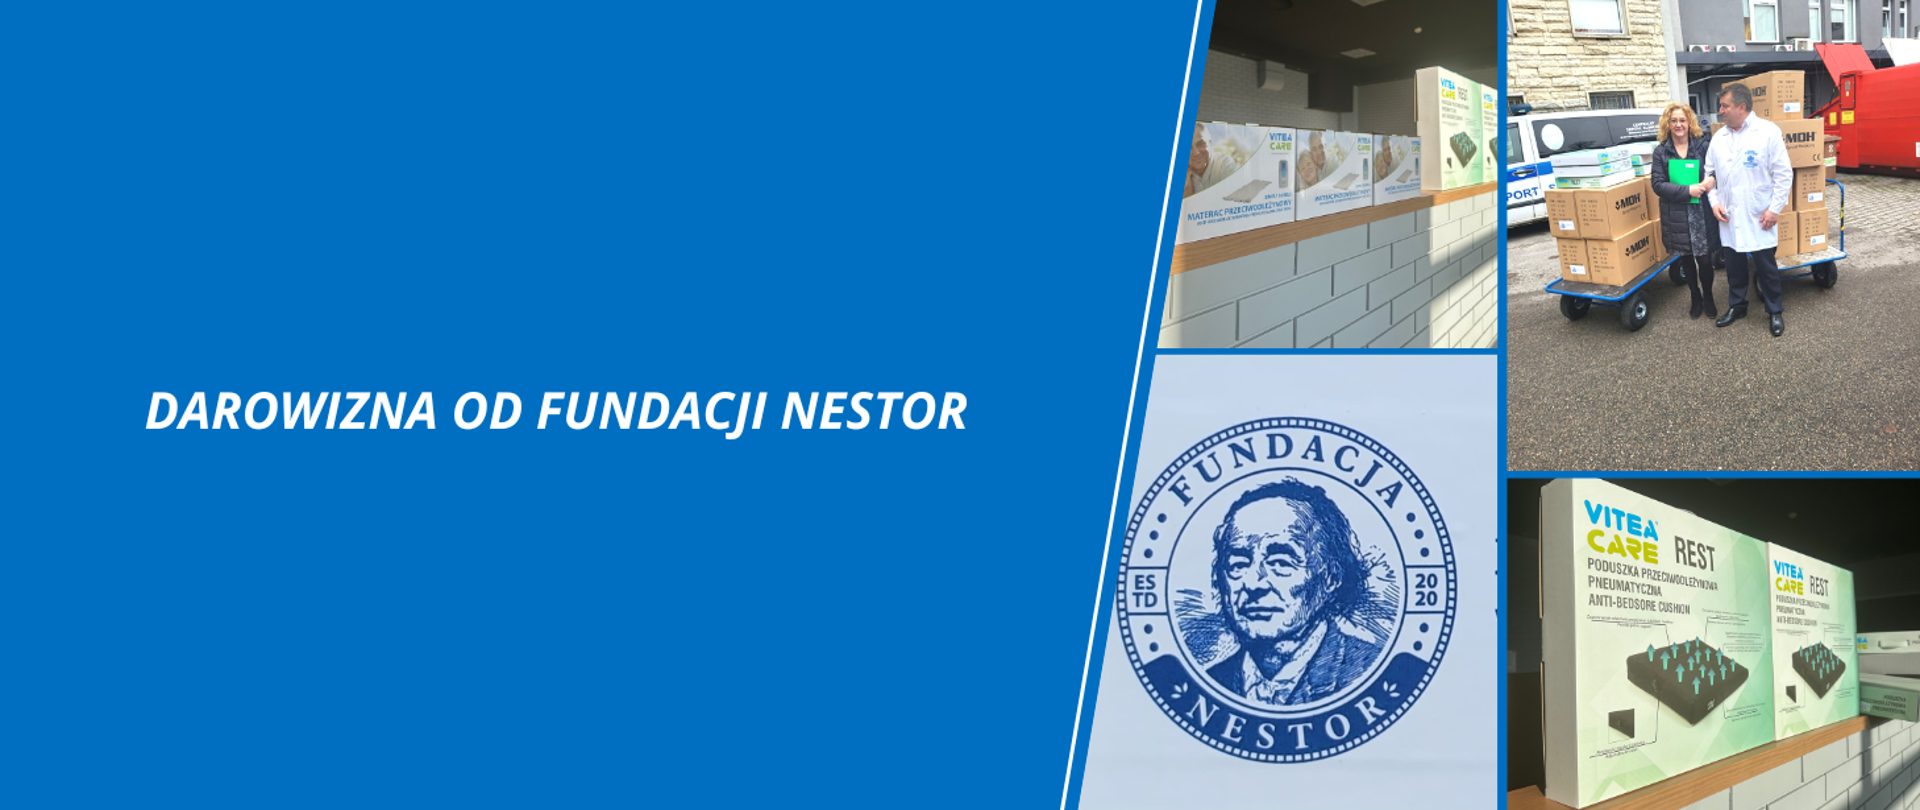 Darowizna od Fundacji Nestor